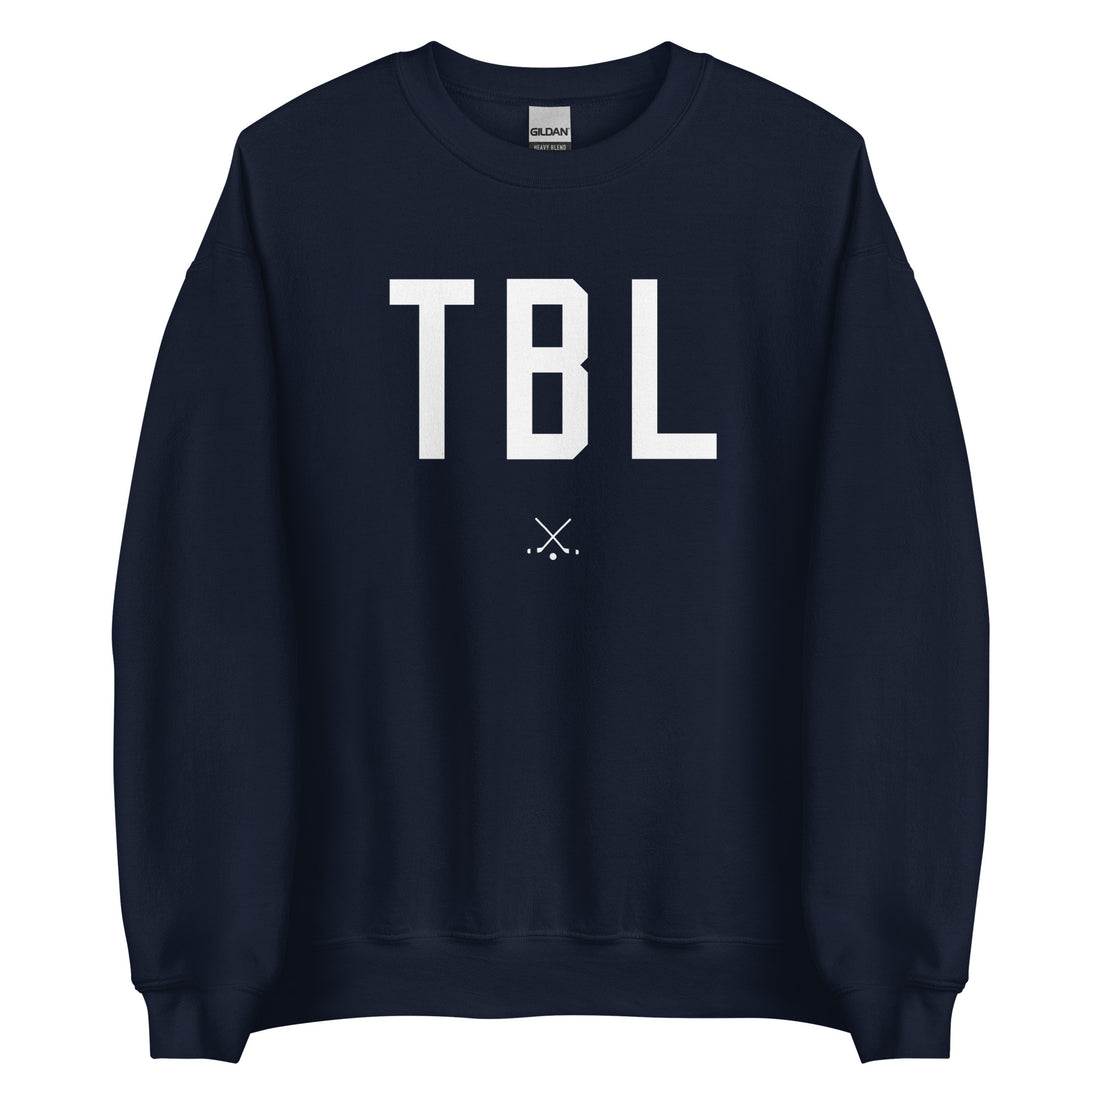 Riiink TBL – Sweatshirt